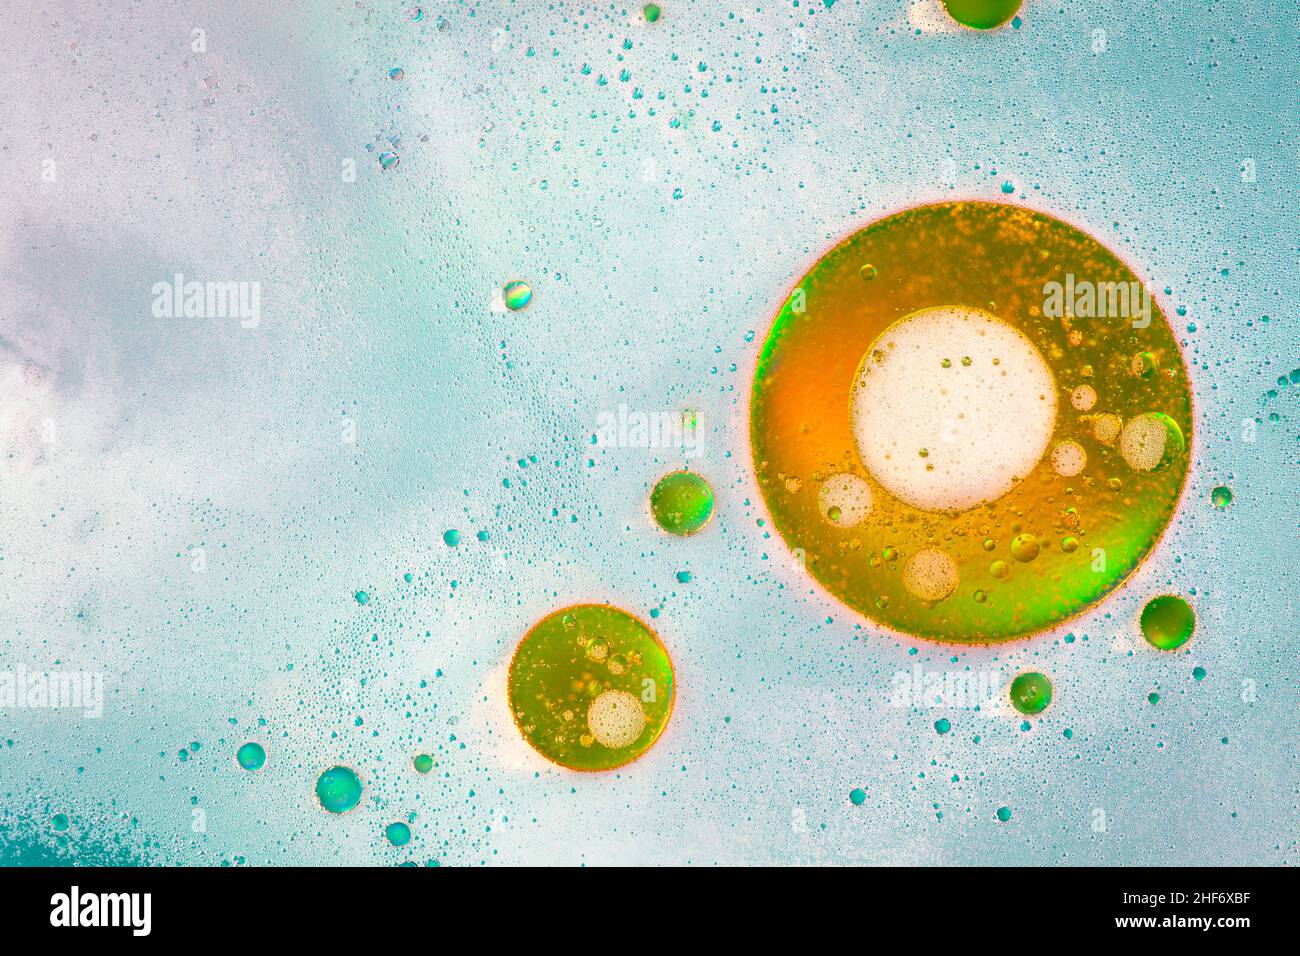 Ölblasen auf der Wasseroberfläche, mehrfarbiger Hintergrund, abstraktes Bild Stockfoto